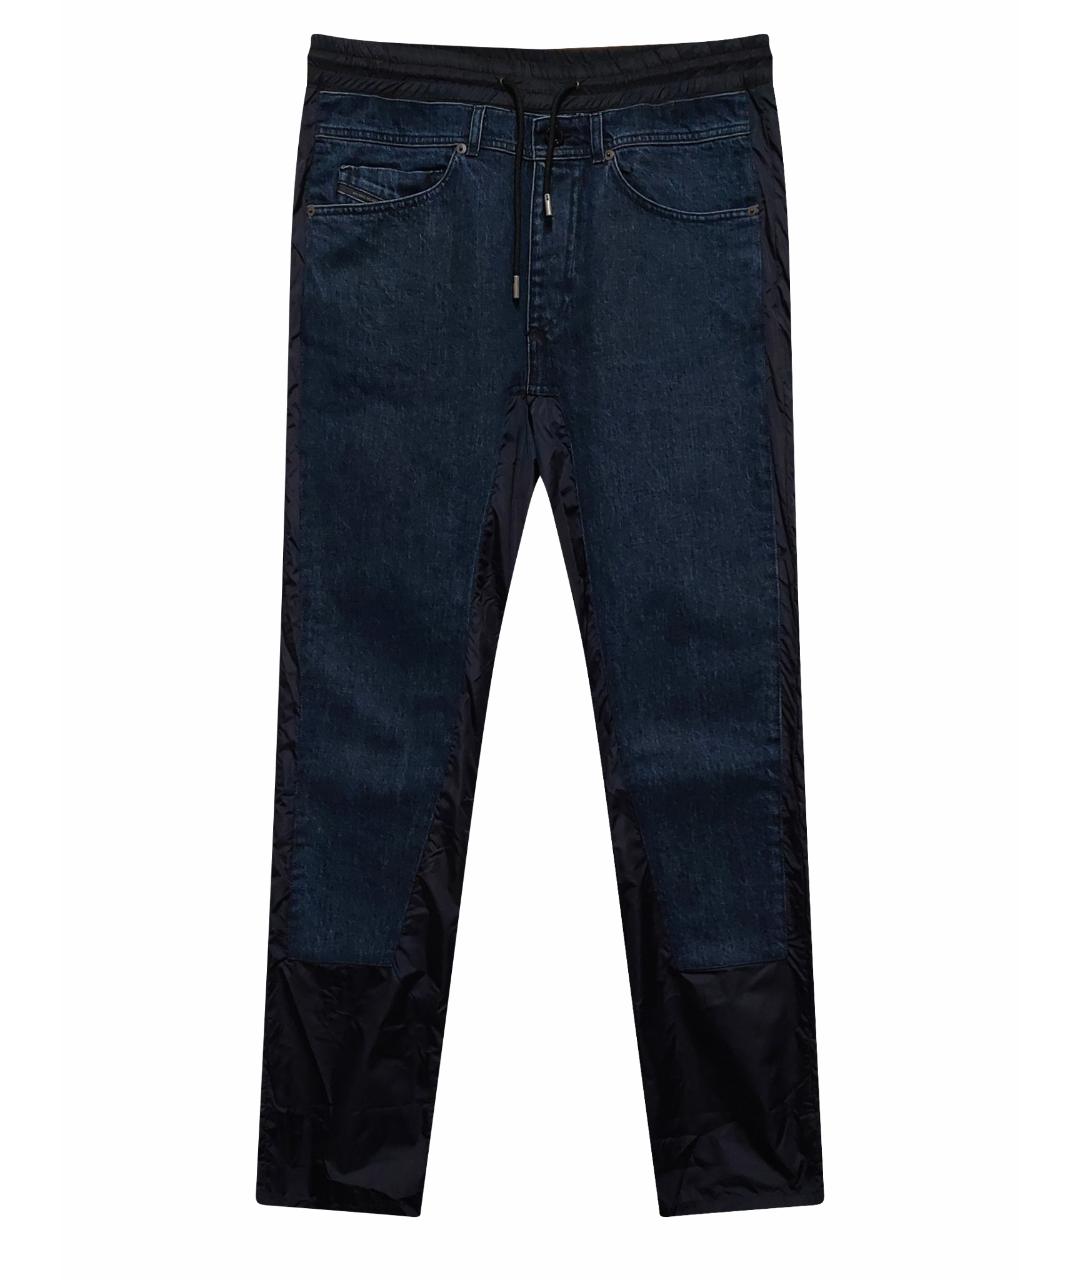 DIESEL BLACK GOLD Темно-синие хлопковые джинсы скинни, фото 1